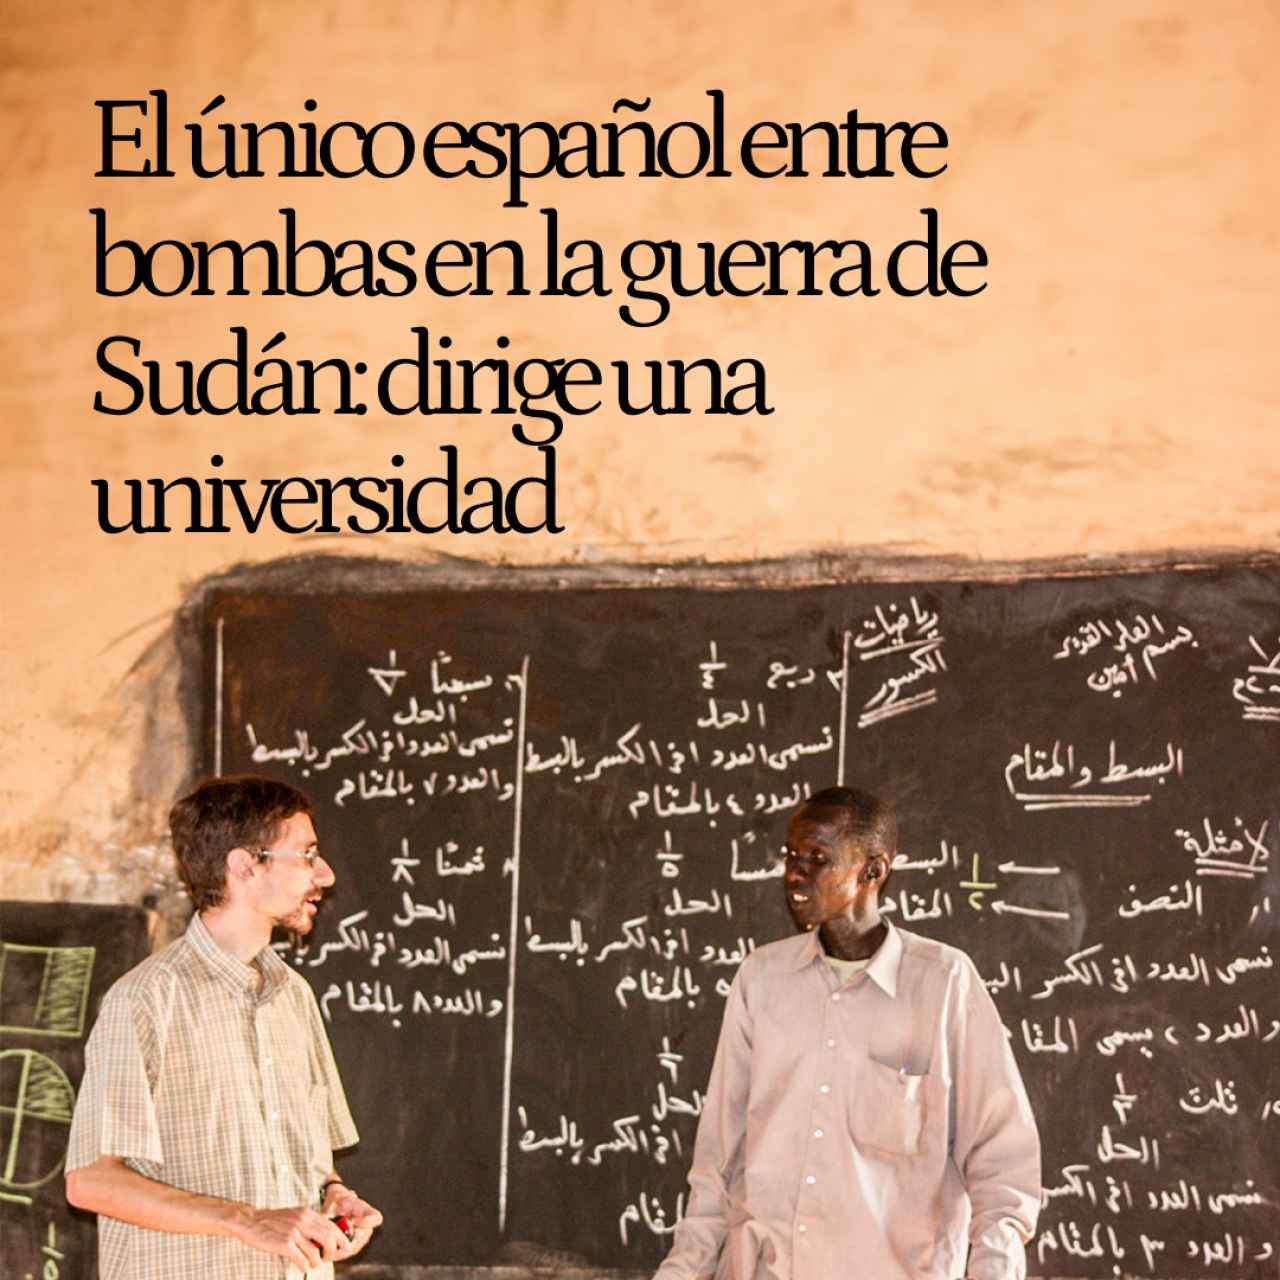 El sacerdote Jorge Naranjo, el único español entre bombas en la guerra de Sudán: dirige una universidad en medio de la hambruna